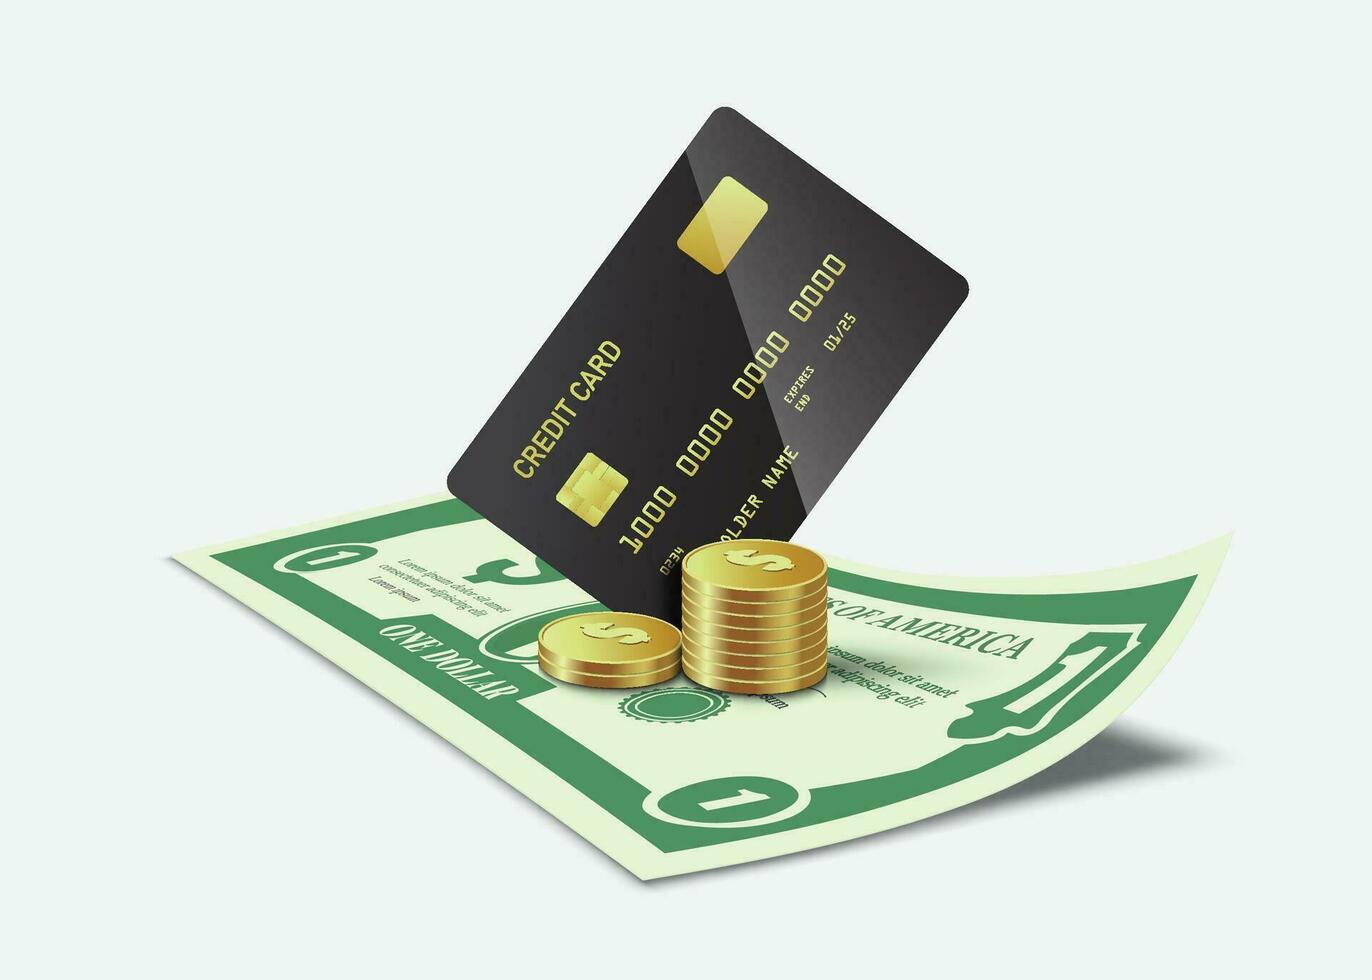 schwarz Anerkennung Karten oder Geldautomat Karten und Gold oder Dollar Münzen sind platziert auf Dollar Rechnung vektor